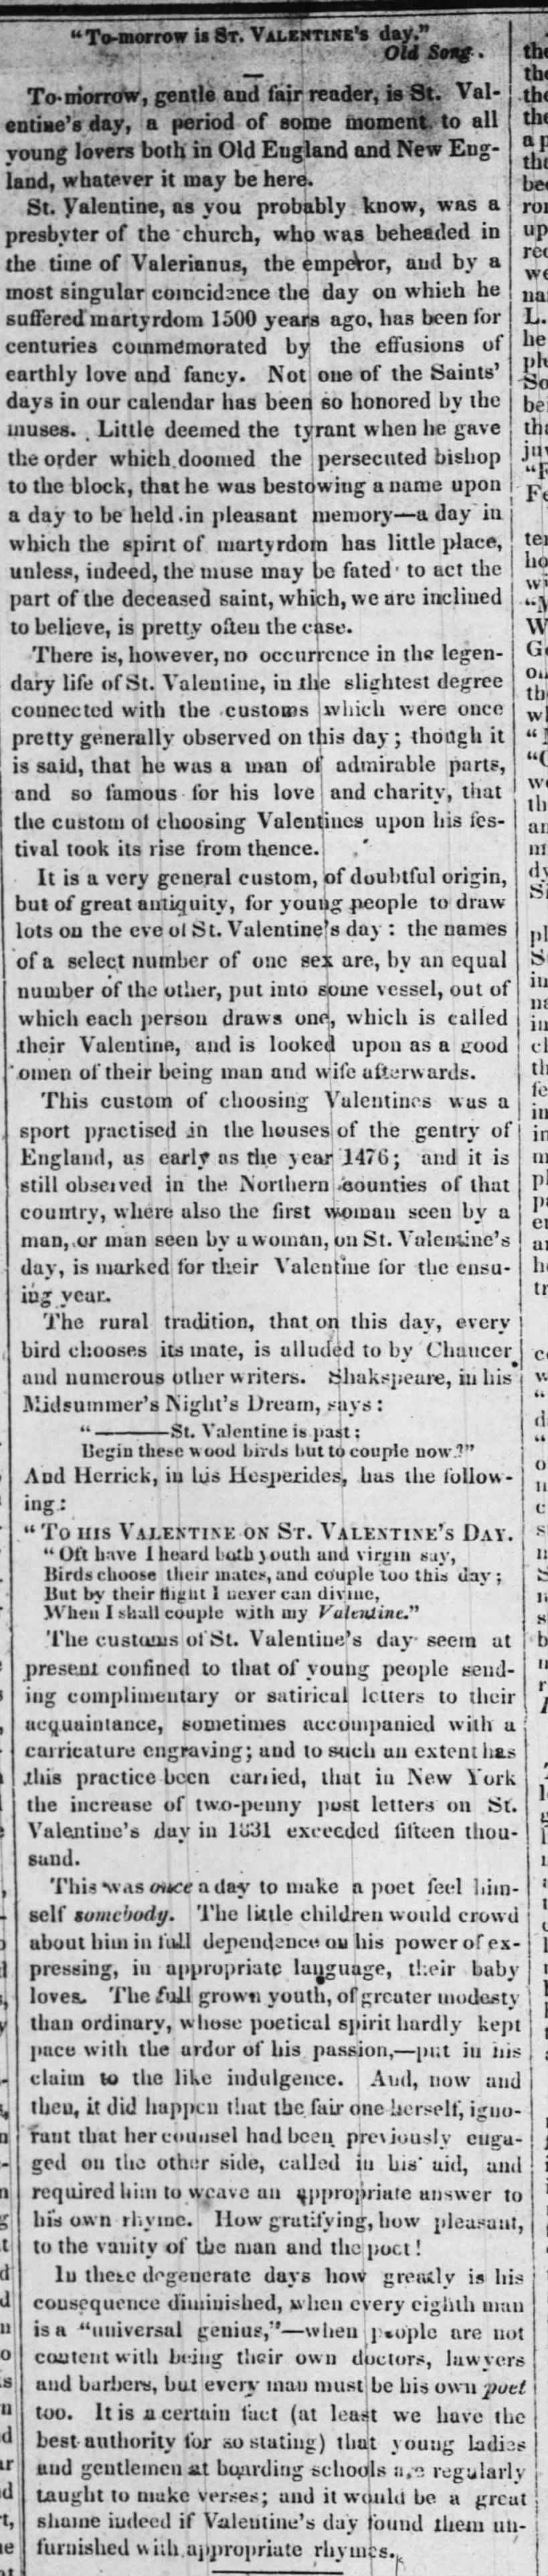 1839 Valentine's Day